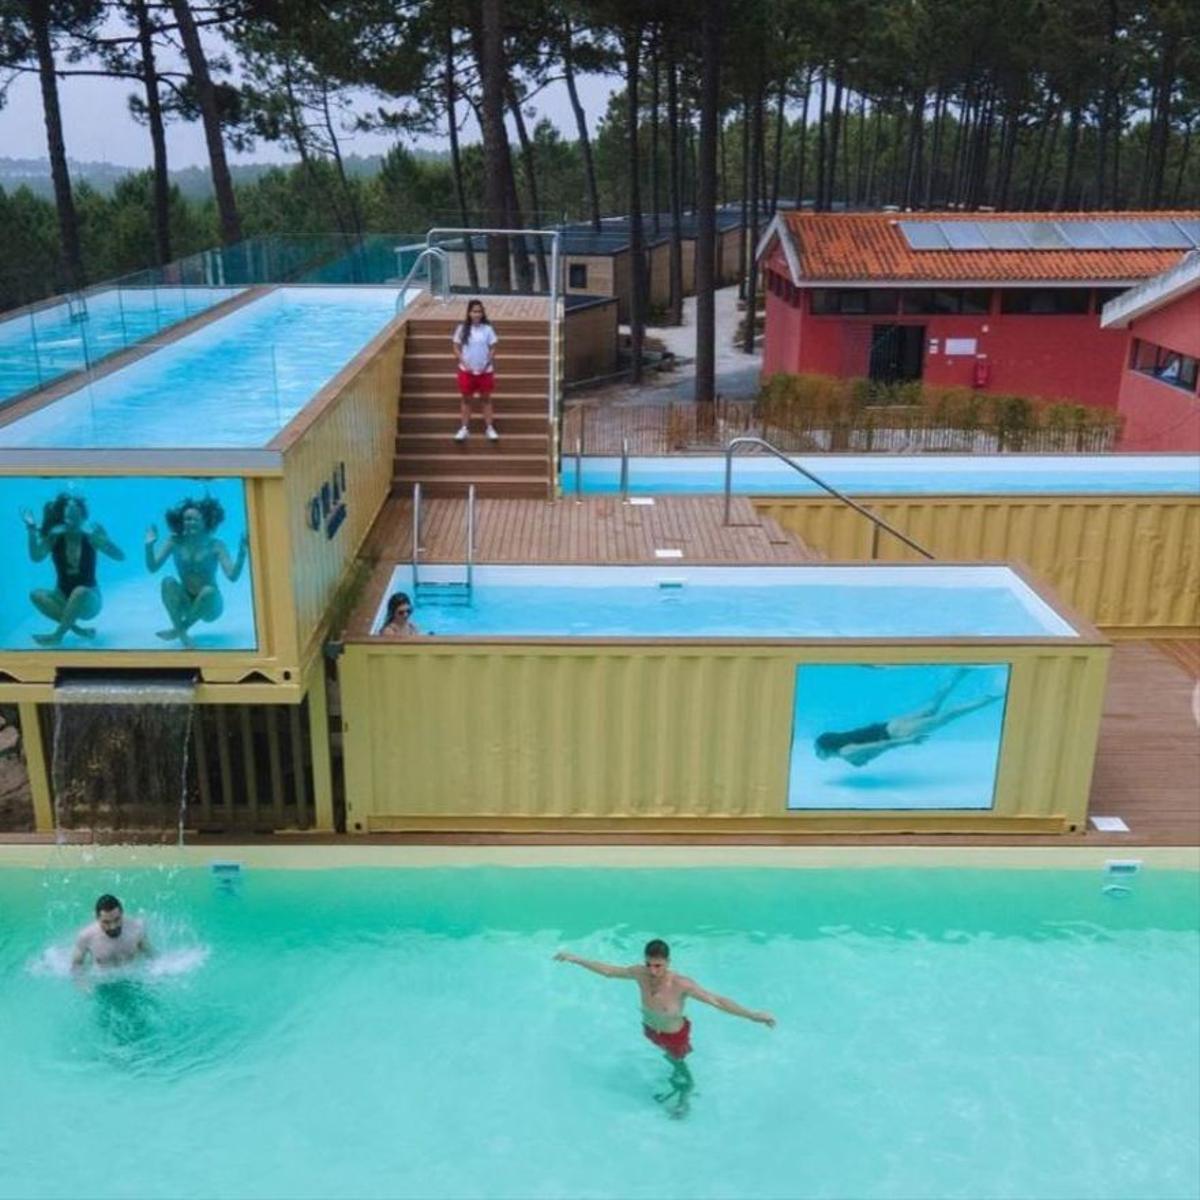 La piscina más alta y grande de Europa, muy cerca de Vigo.